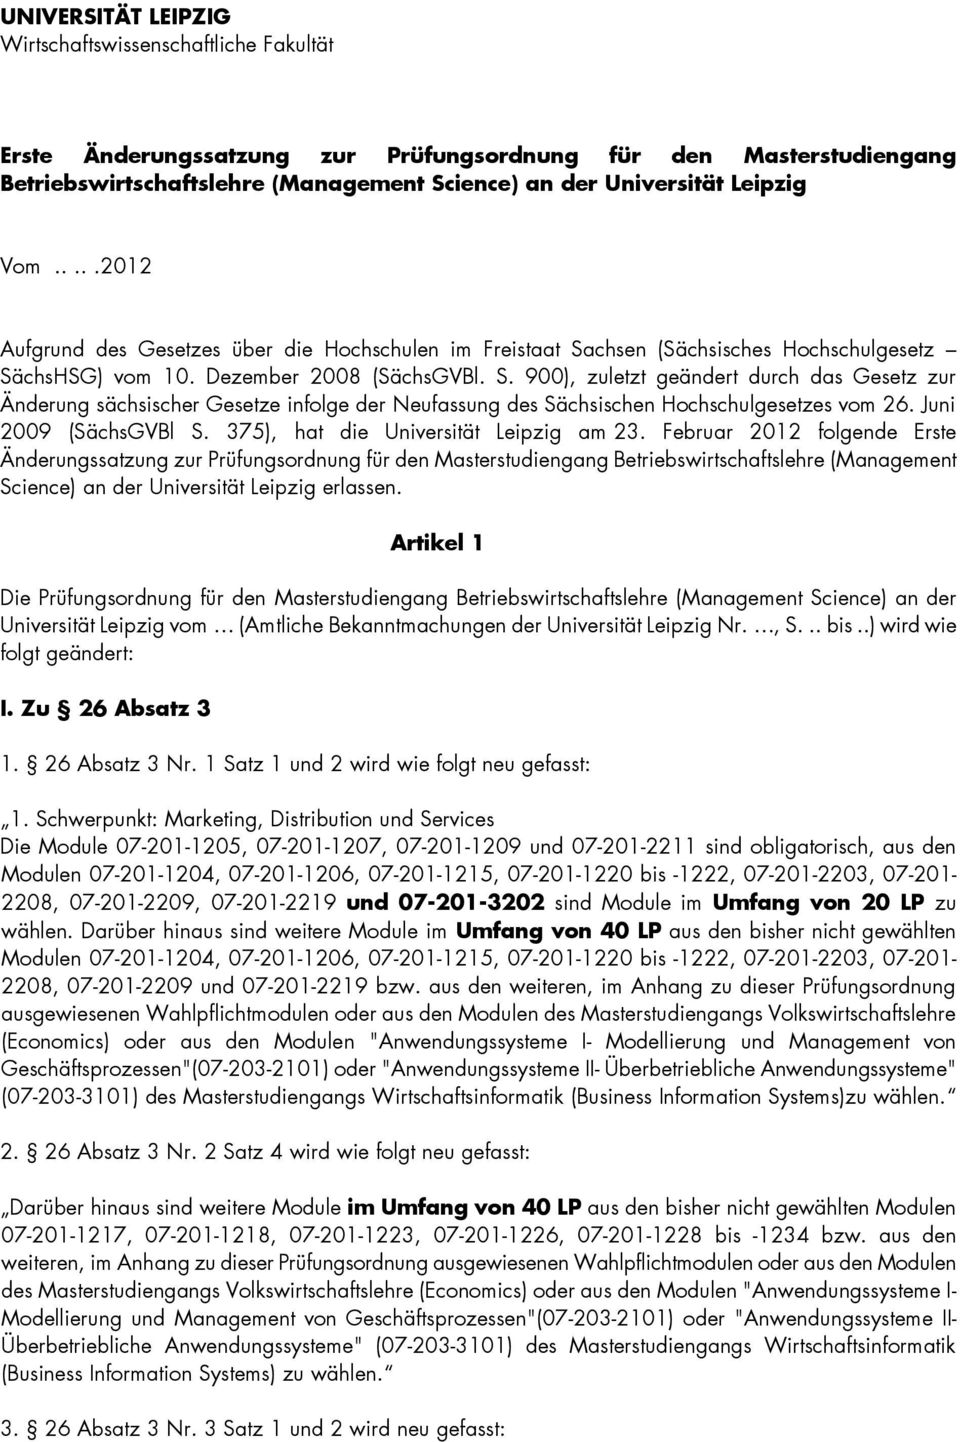 chsen (Sächsisches Hochschulgesetz SächsHSG) vom 0. Dezember 008 (SächsGVBl. S. 900), zuletzt geändert durch das Gesetz zur Änderung sächsischer Gesetze infolge der Neufassung des Sächsischen Hochschulgesetzes vom 6.